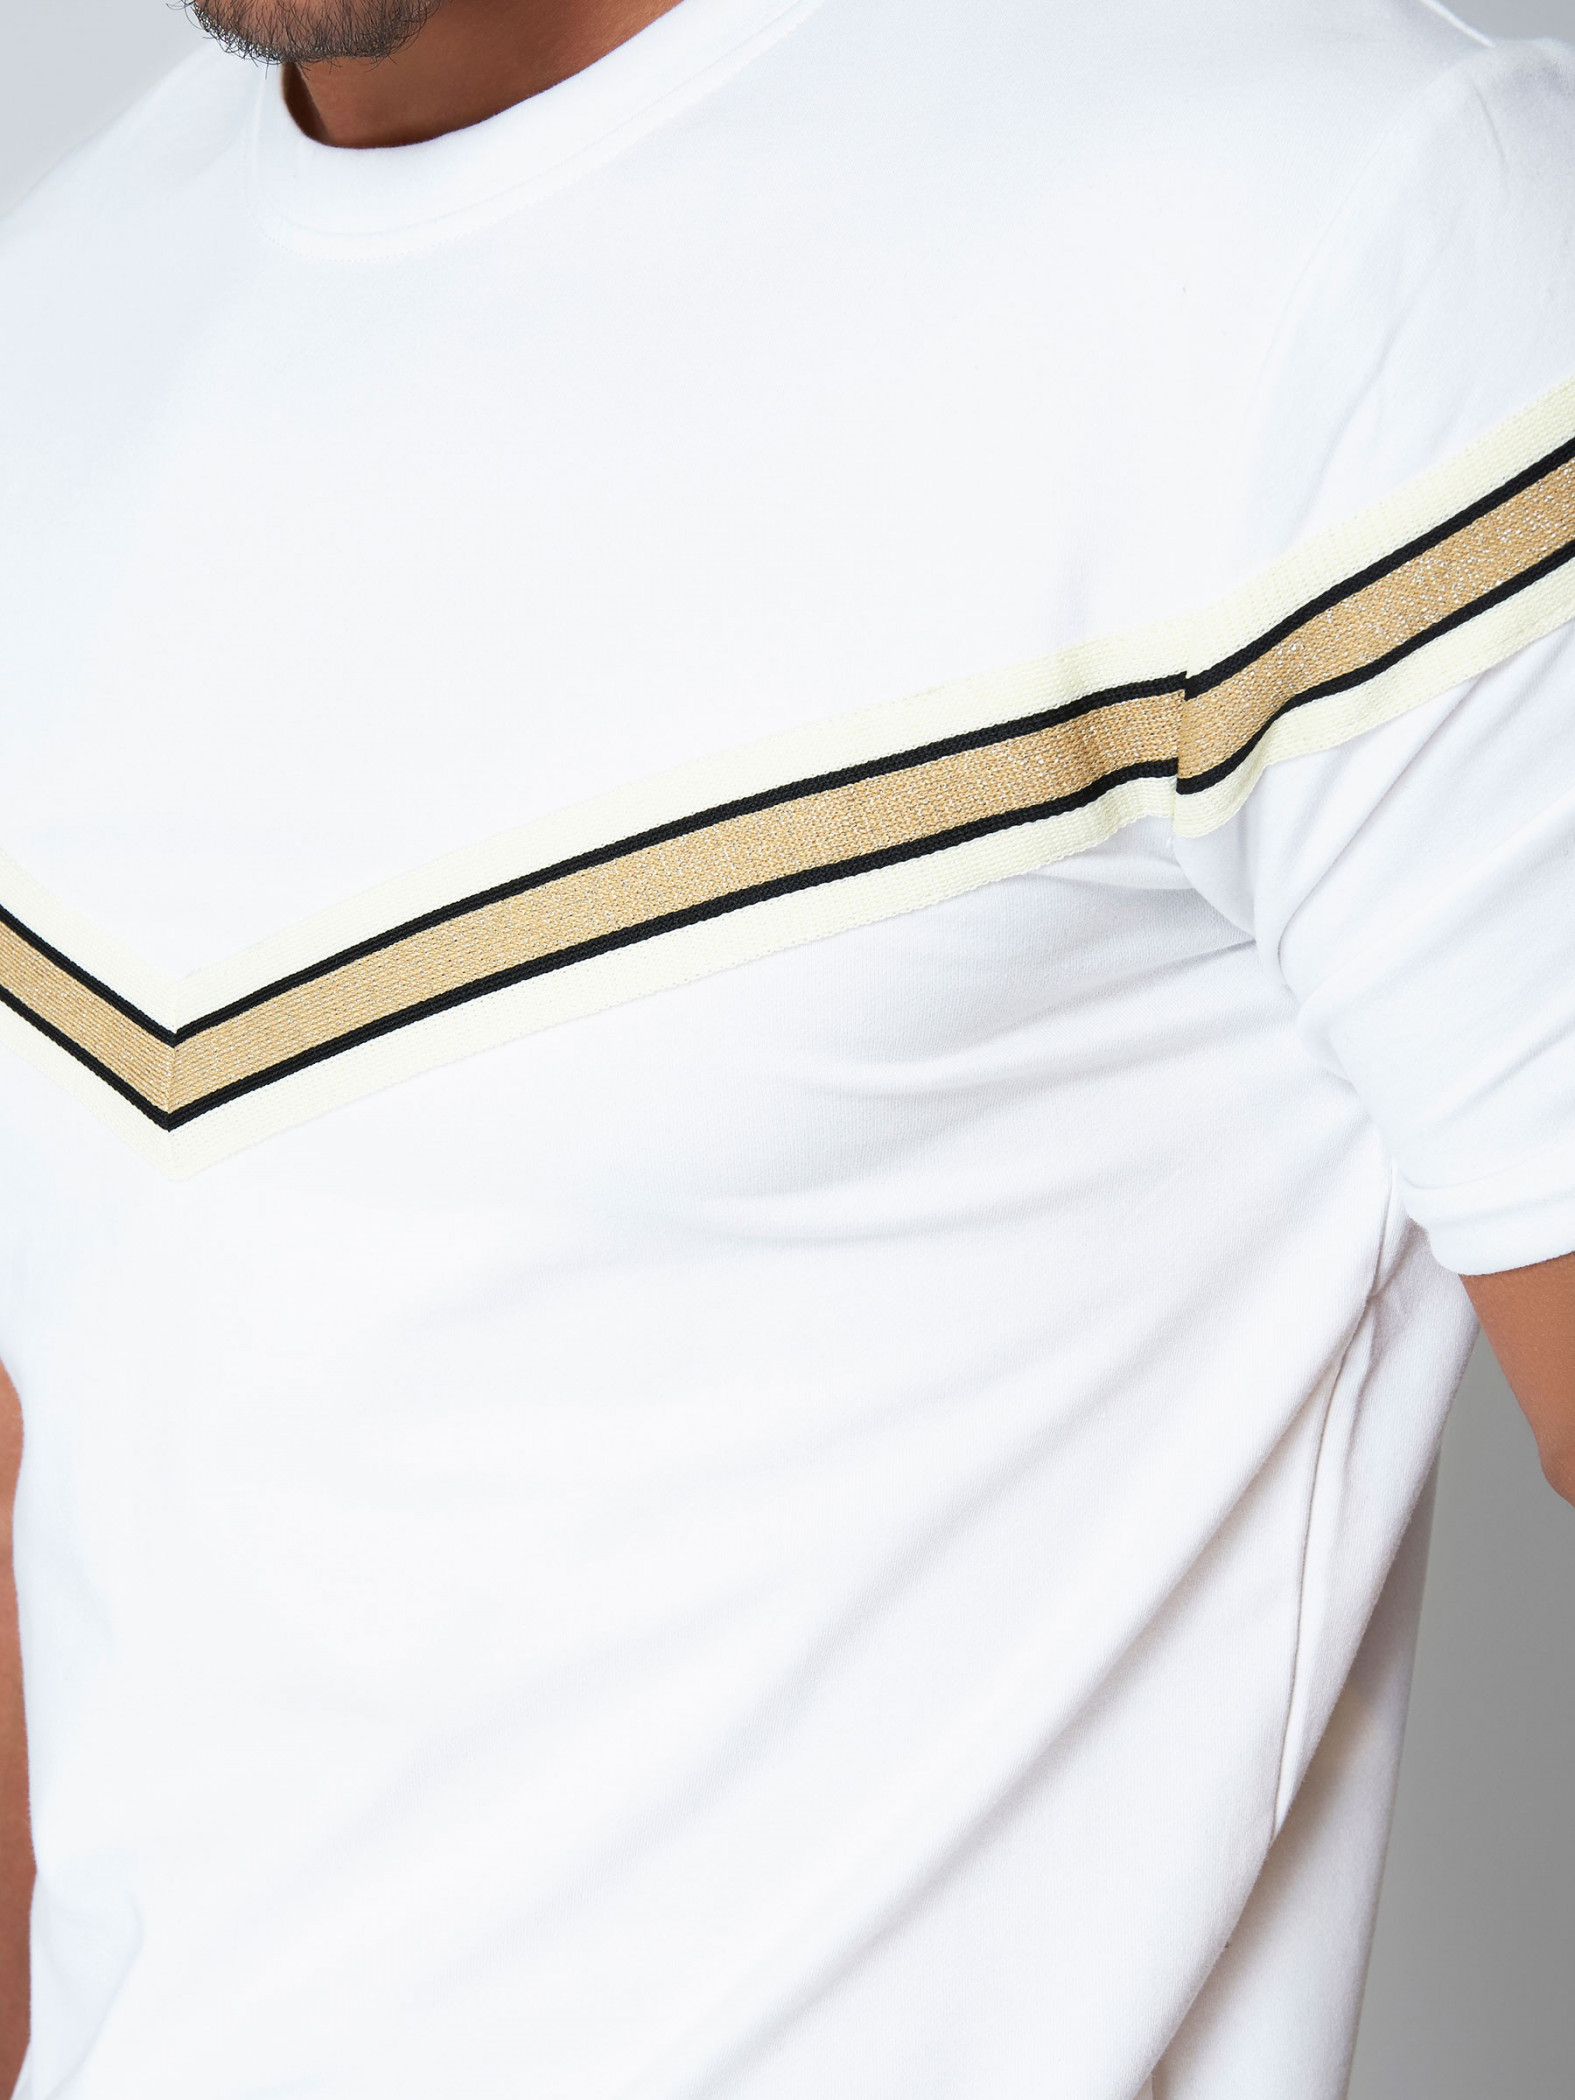 Tee shirt avec empiècement V doré Homme Project X Paris